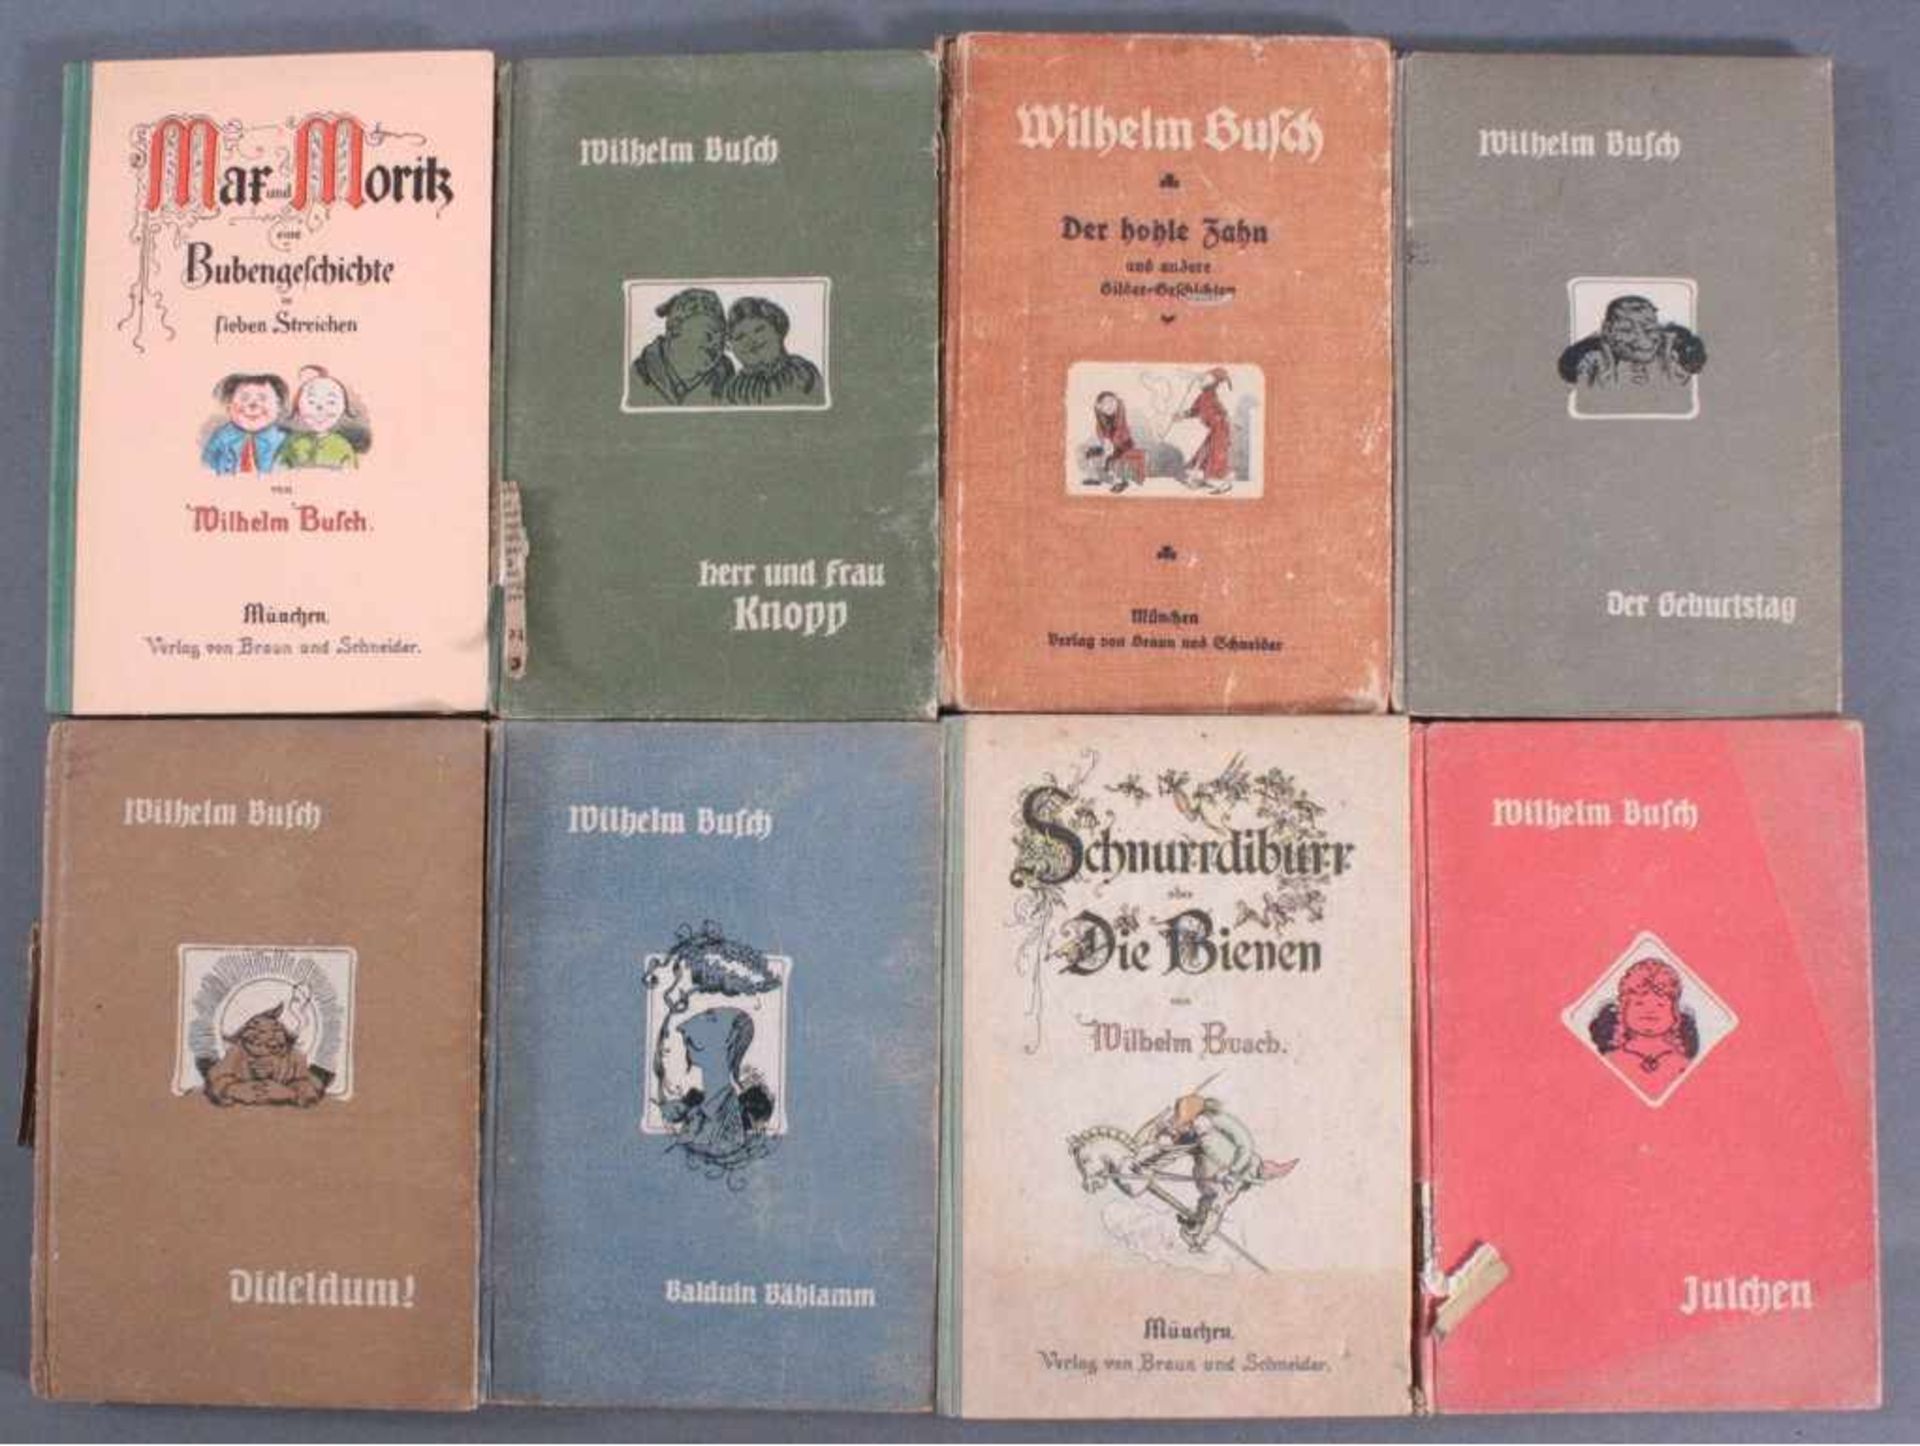 Wilhelm Buschs Märchenbücher, 8 StückDideldum, Max und Moritz, Schmurrdiburr oder die Bienchen,